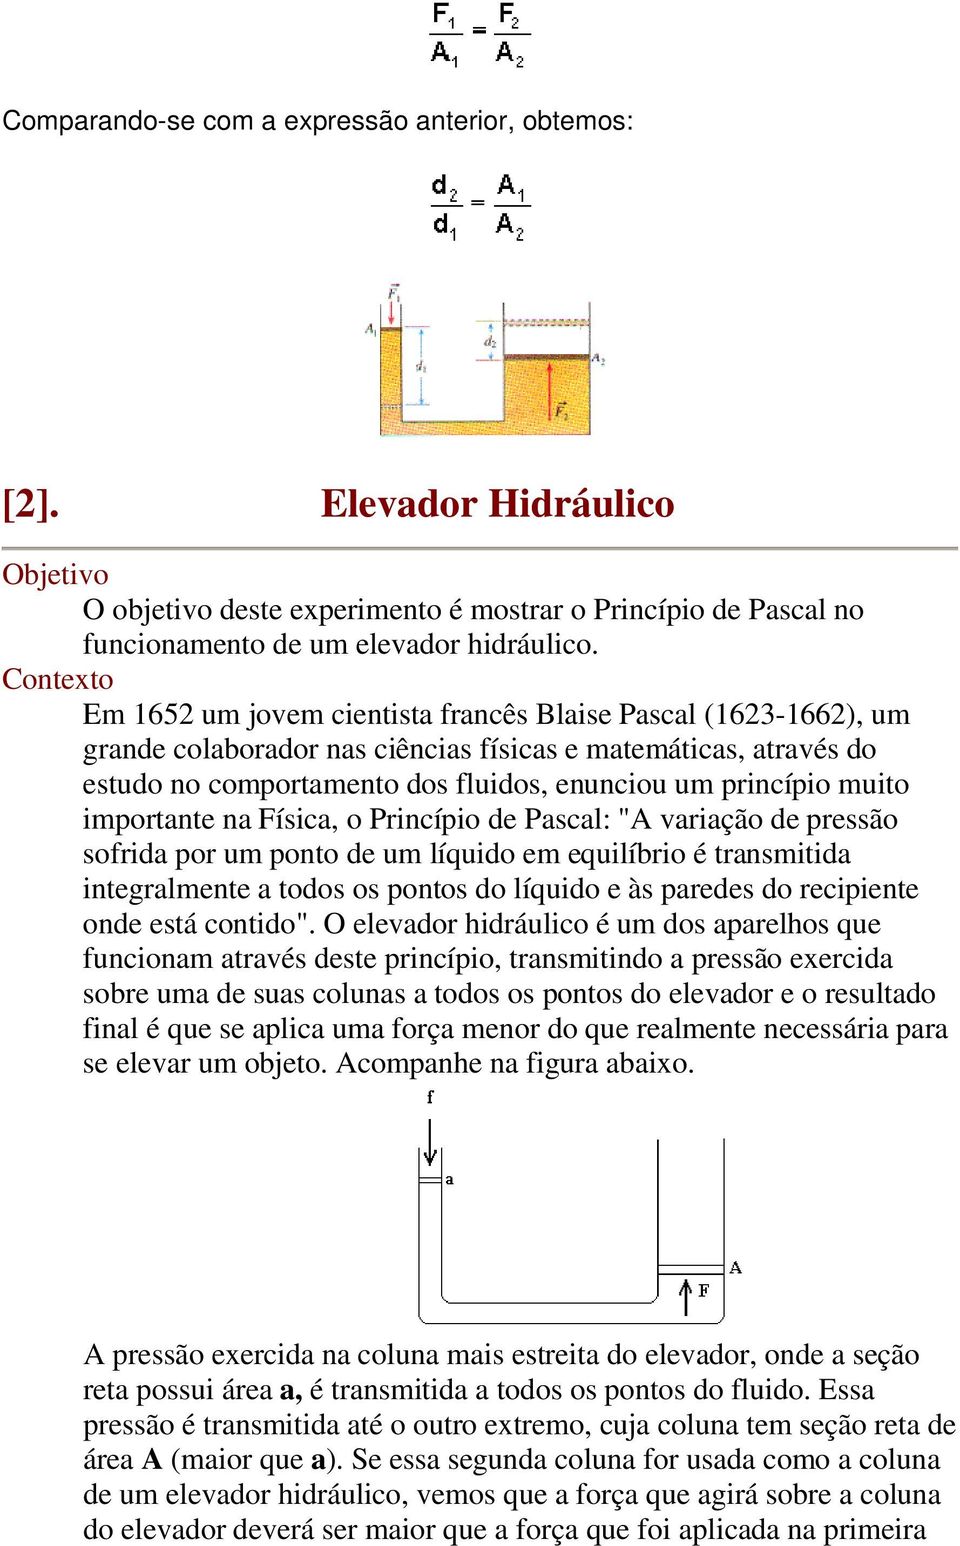 muito importante na Física, o Princípio de Pascal: "A variação de pressão sofrida por um ponto de um líquido em equilíbrio é transmitida integralmente a todos os pontos do líquido e às paredes do